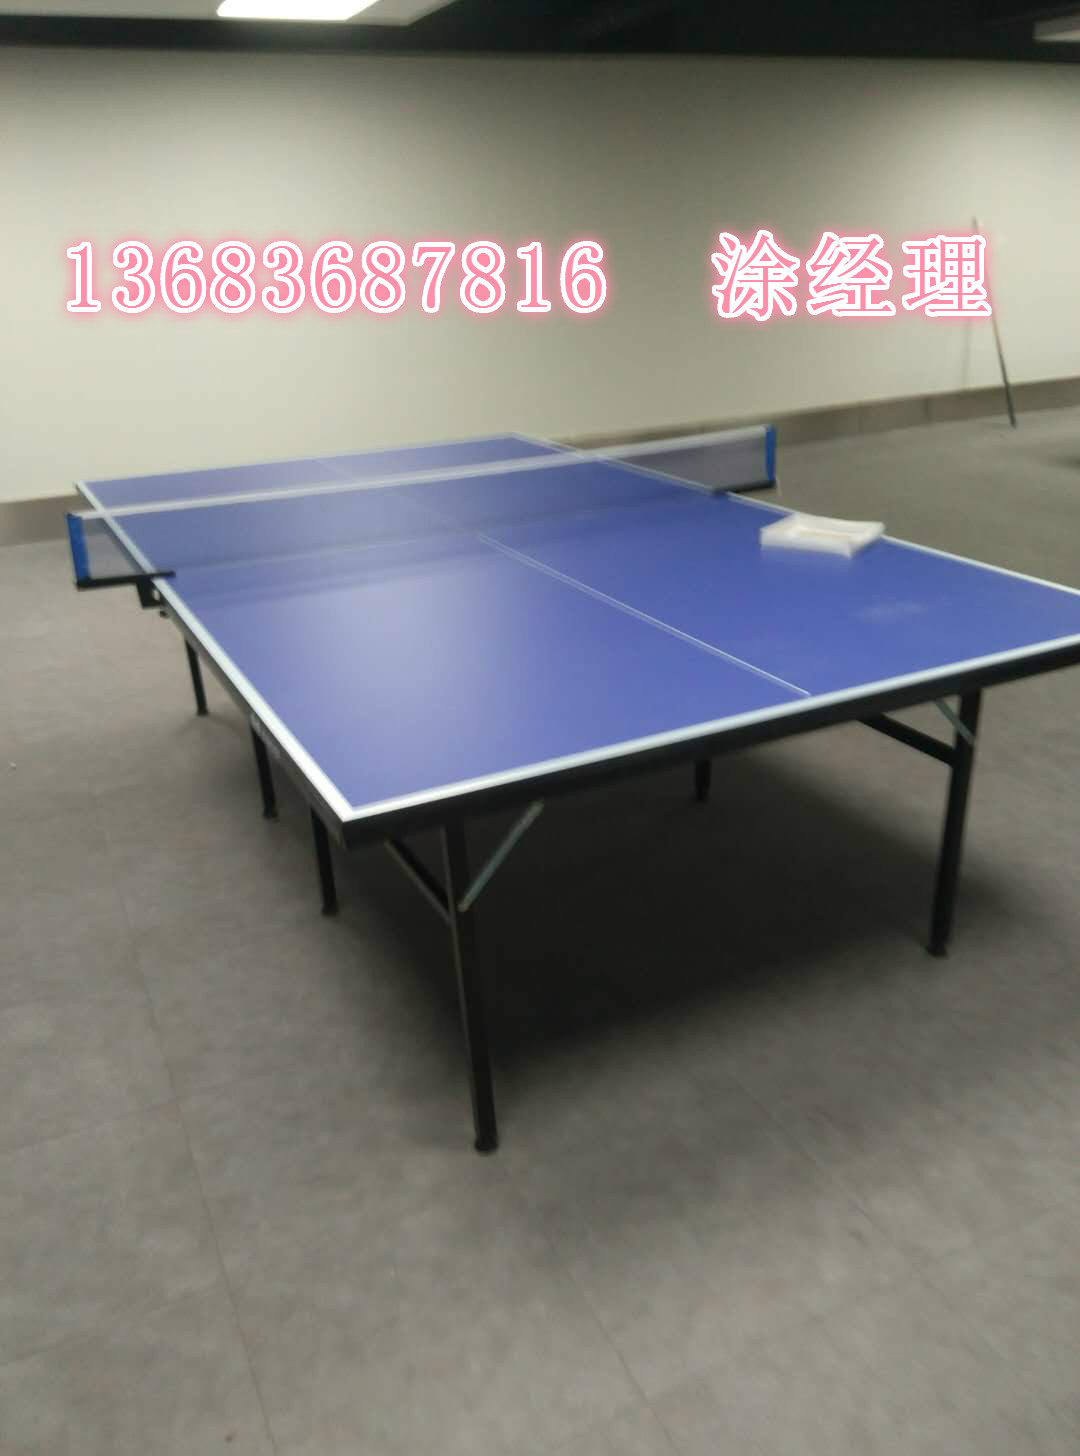 供应乒乓球桌 北京乒乓球桌厂家 乒乓球桌厂家直销 乒乓球桌热线电